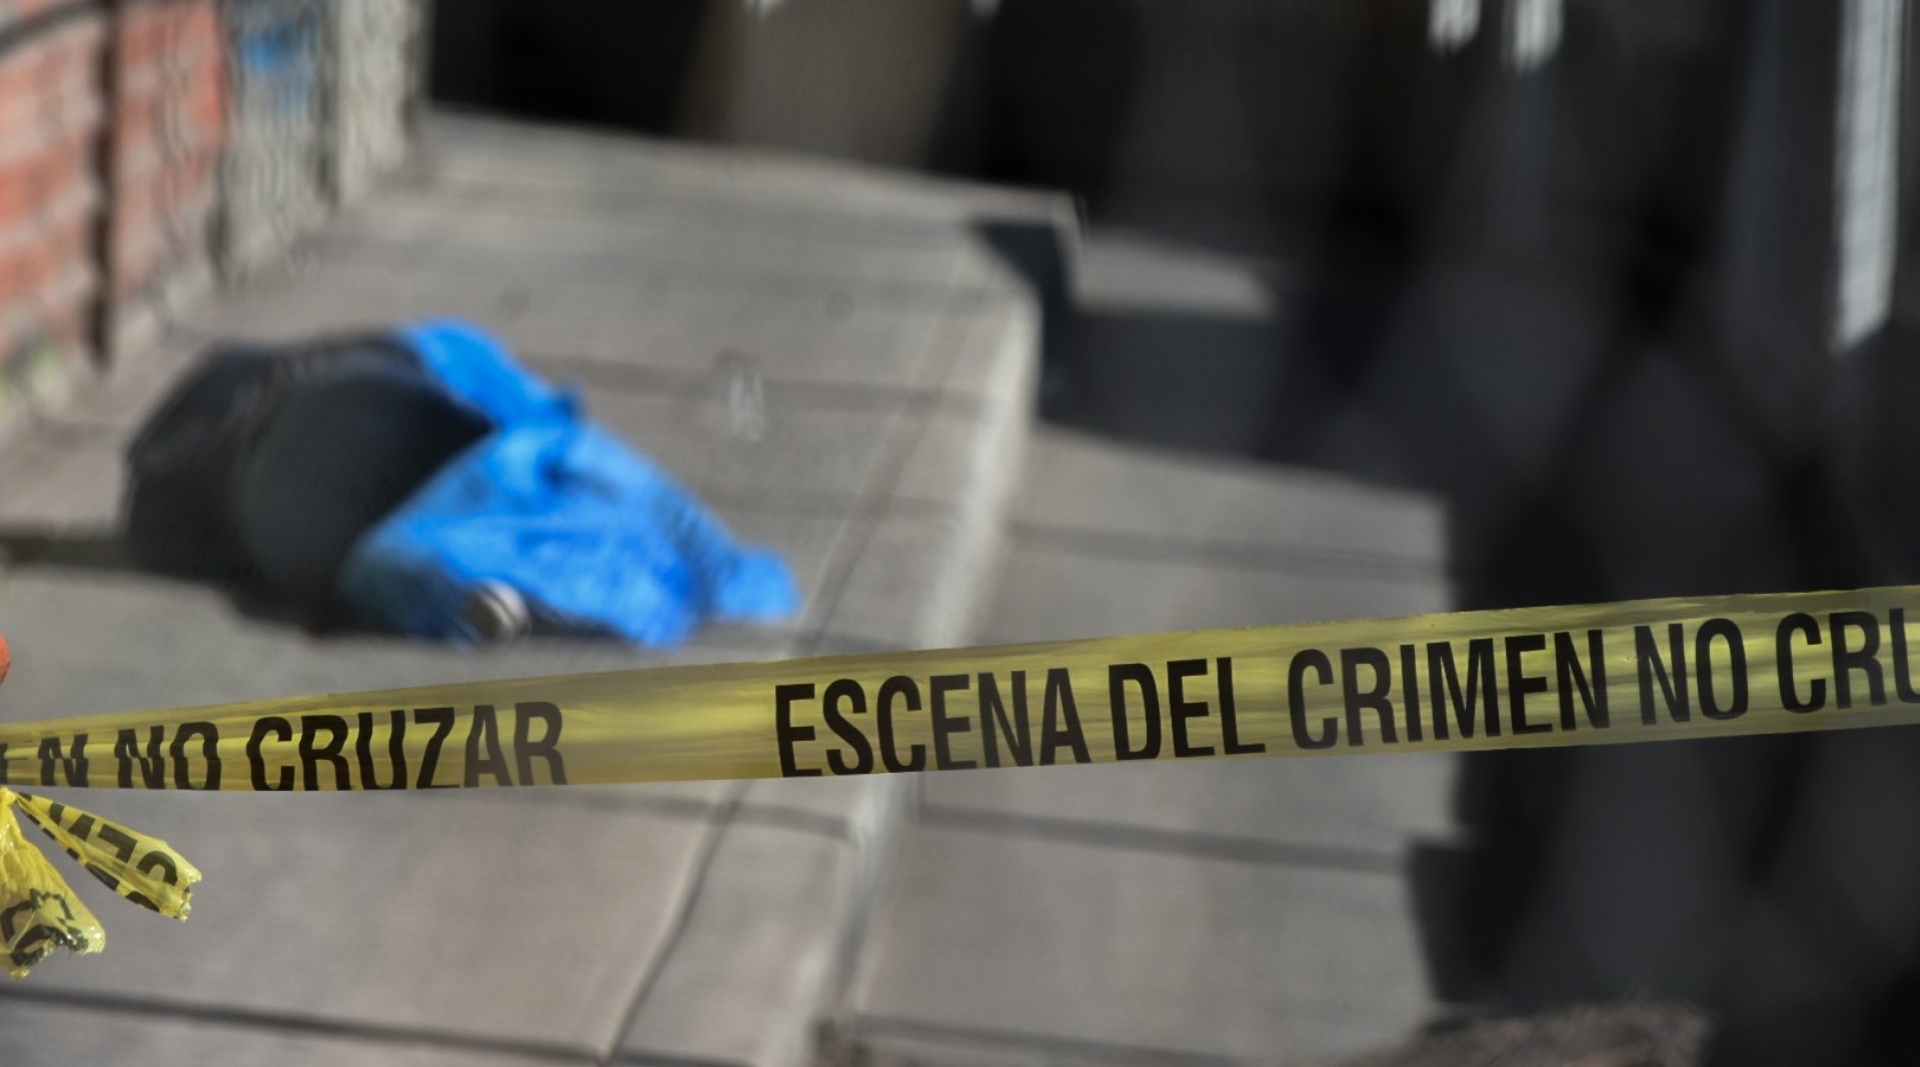 Los homicidios en México disminuyeron 11% en la primer mitad de 2022 comparado con el año anterior: INEGI